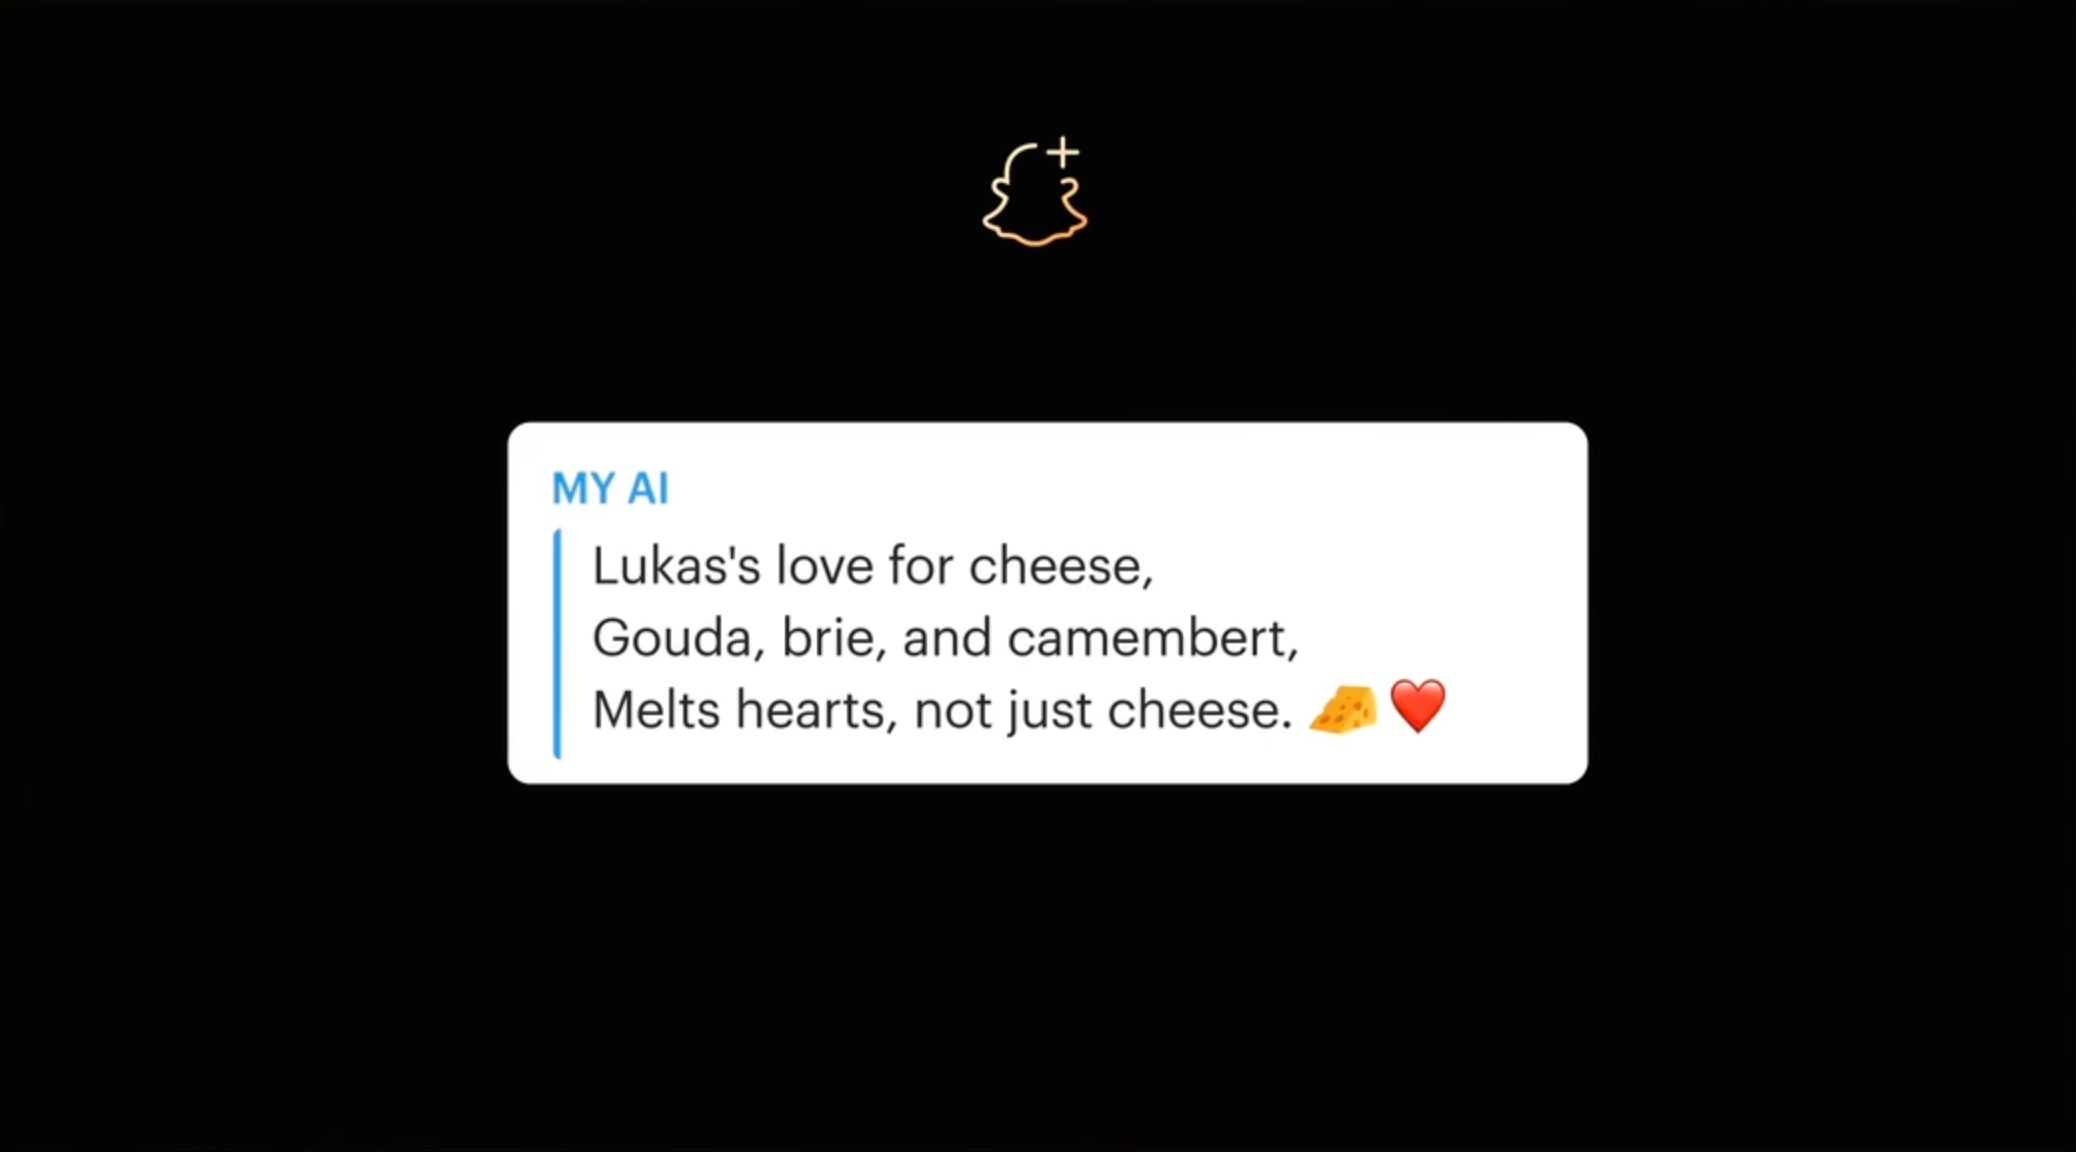 Slik svarer chatboten på en forespørsel om å lage et haiku-dikt om brukerens venn Lukas, som er glad i ost.  